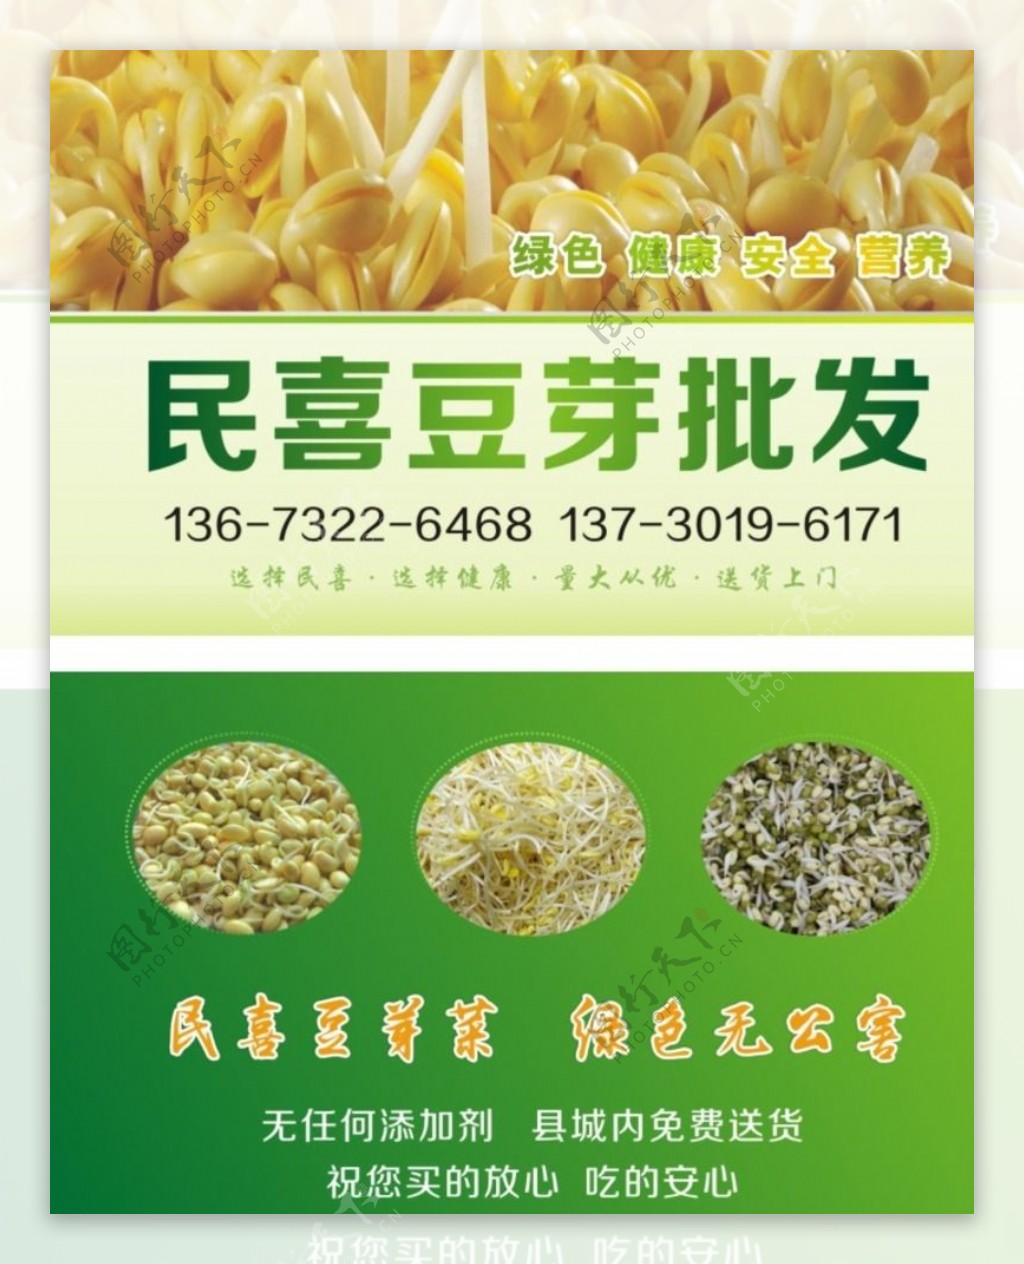 绿色豆芽食品经销名片图片